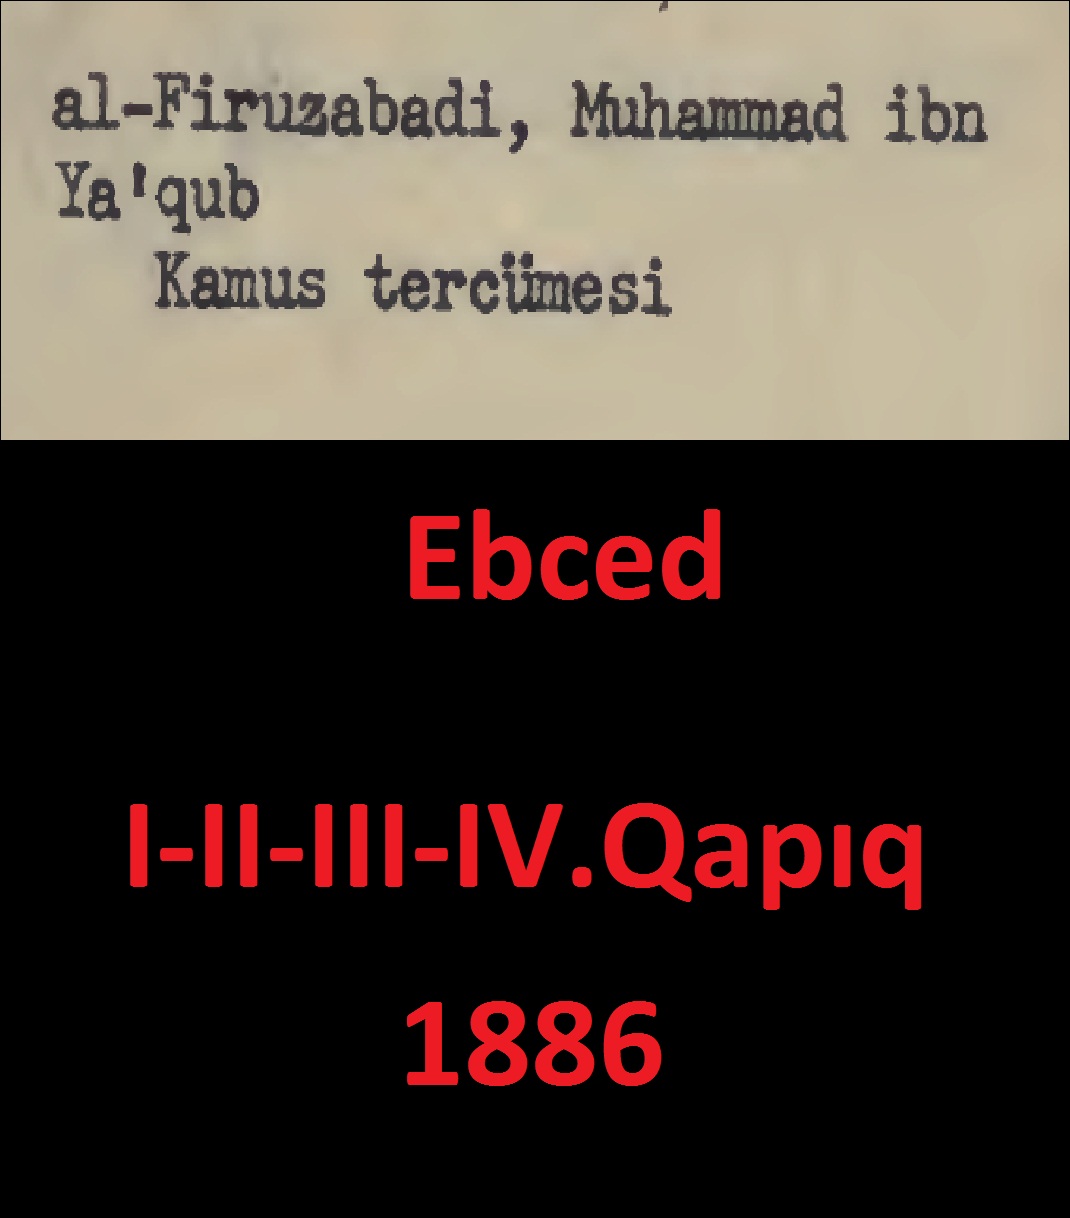 Qamus Tercümesi-Alfiruzabadi Muhammedibni Yaqub-4.Qapıq-Ebced-1886